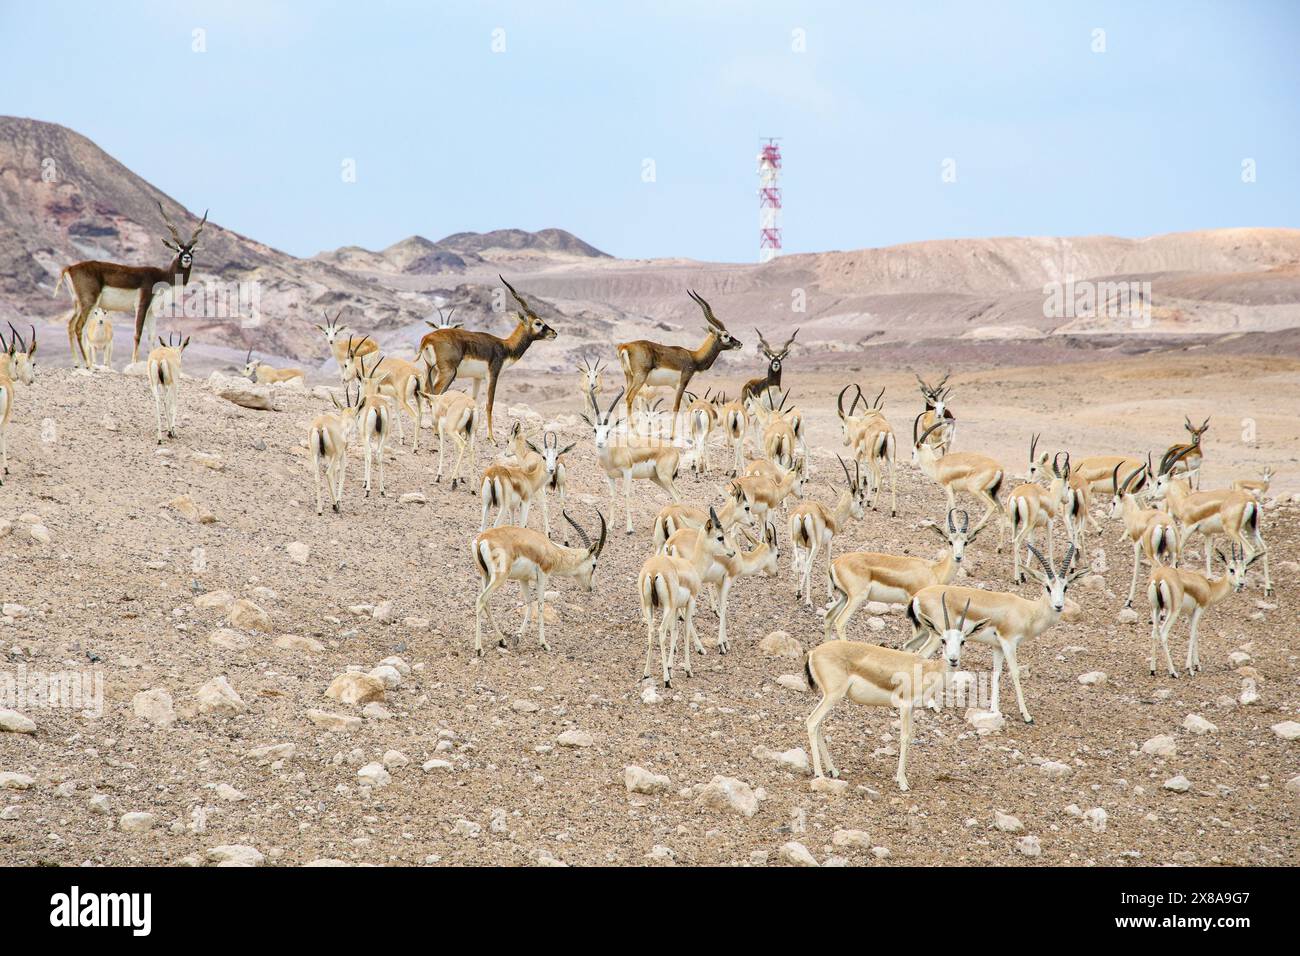 Una mandria di antilopi pascolano pacificamente in mezzo alla dura bellezza di un paesaggio desertico, sotto l'occhio vigile della connettività moderna. Foto Stock